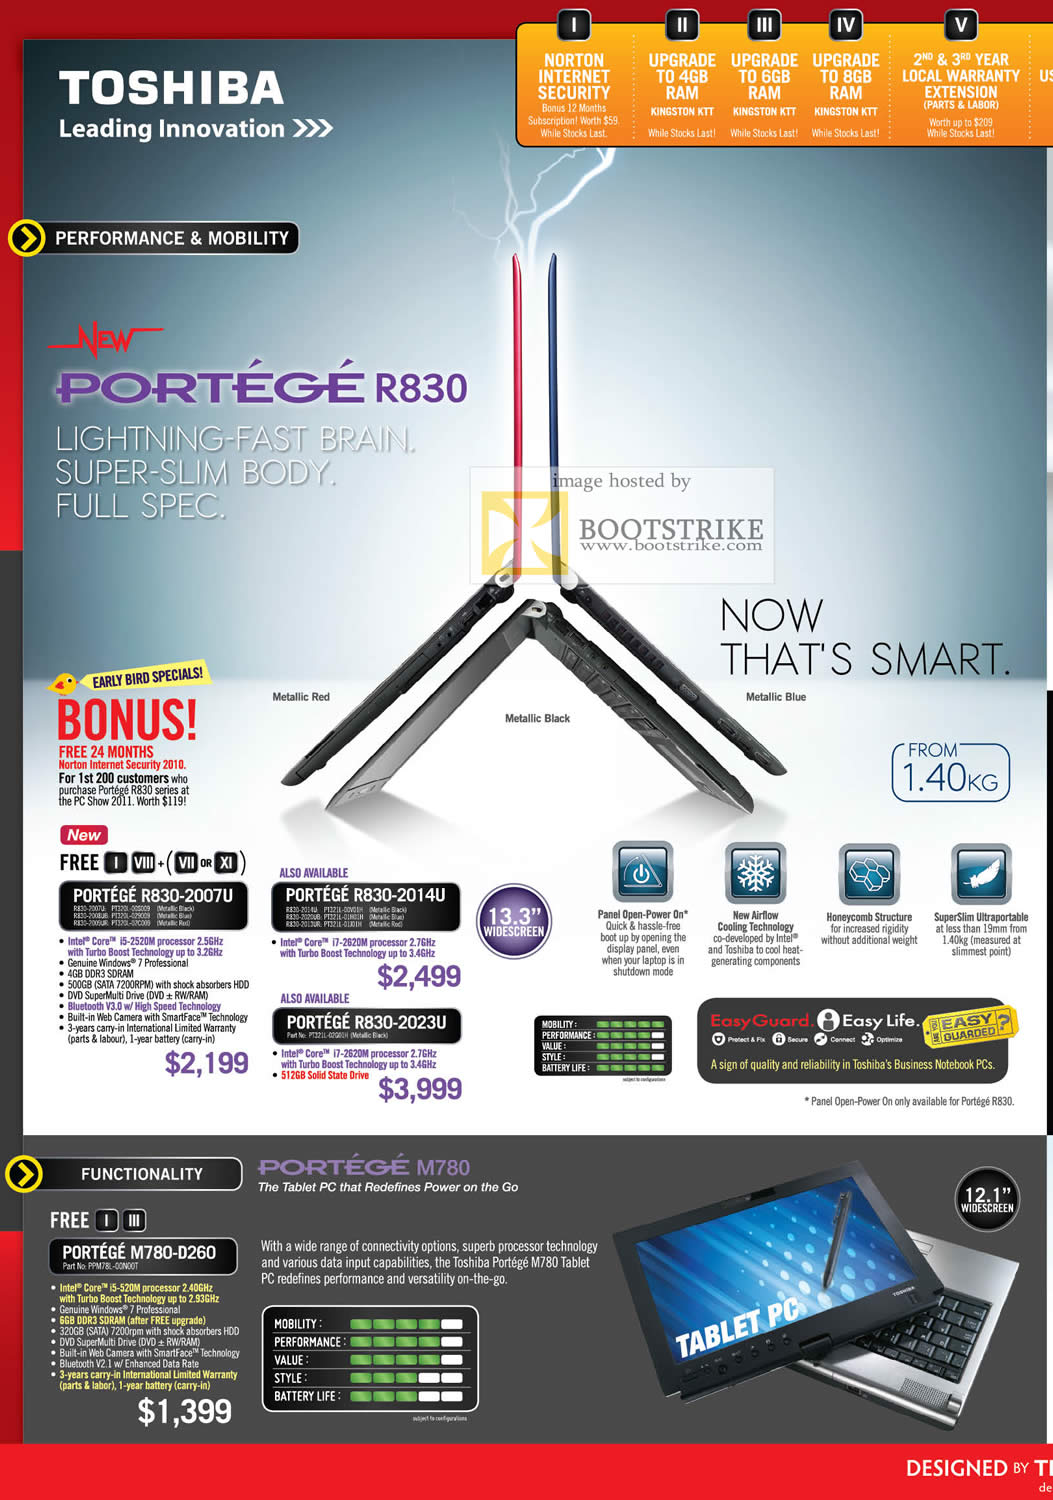 PC Show 2011 price list image brochure of Toshiba Notebooks Portege R830 2007U 2014U 2023U M780-D260